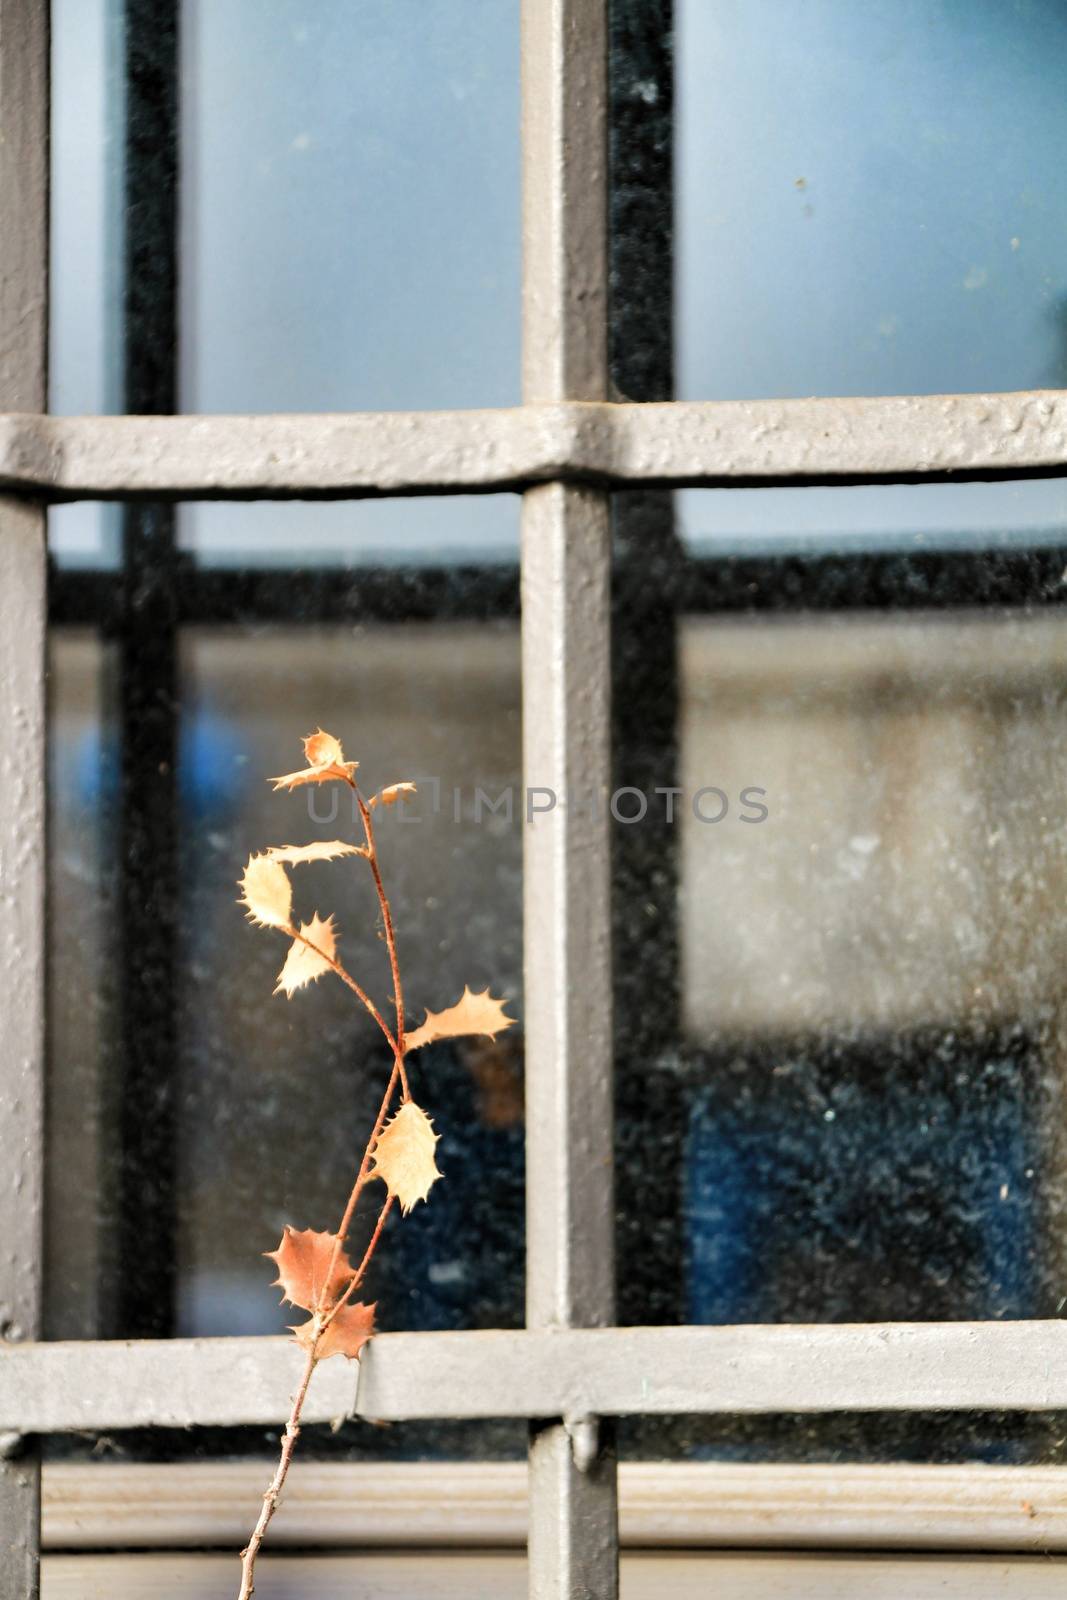 Dry plant in a latticed window by soniabonet